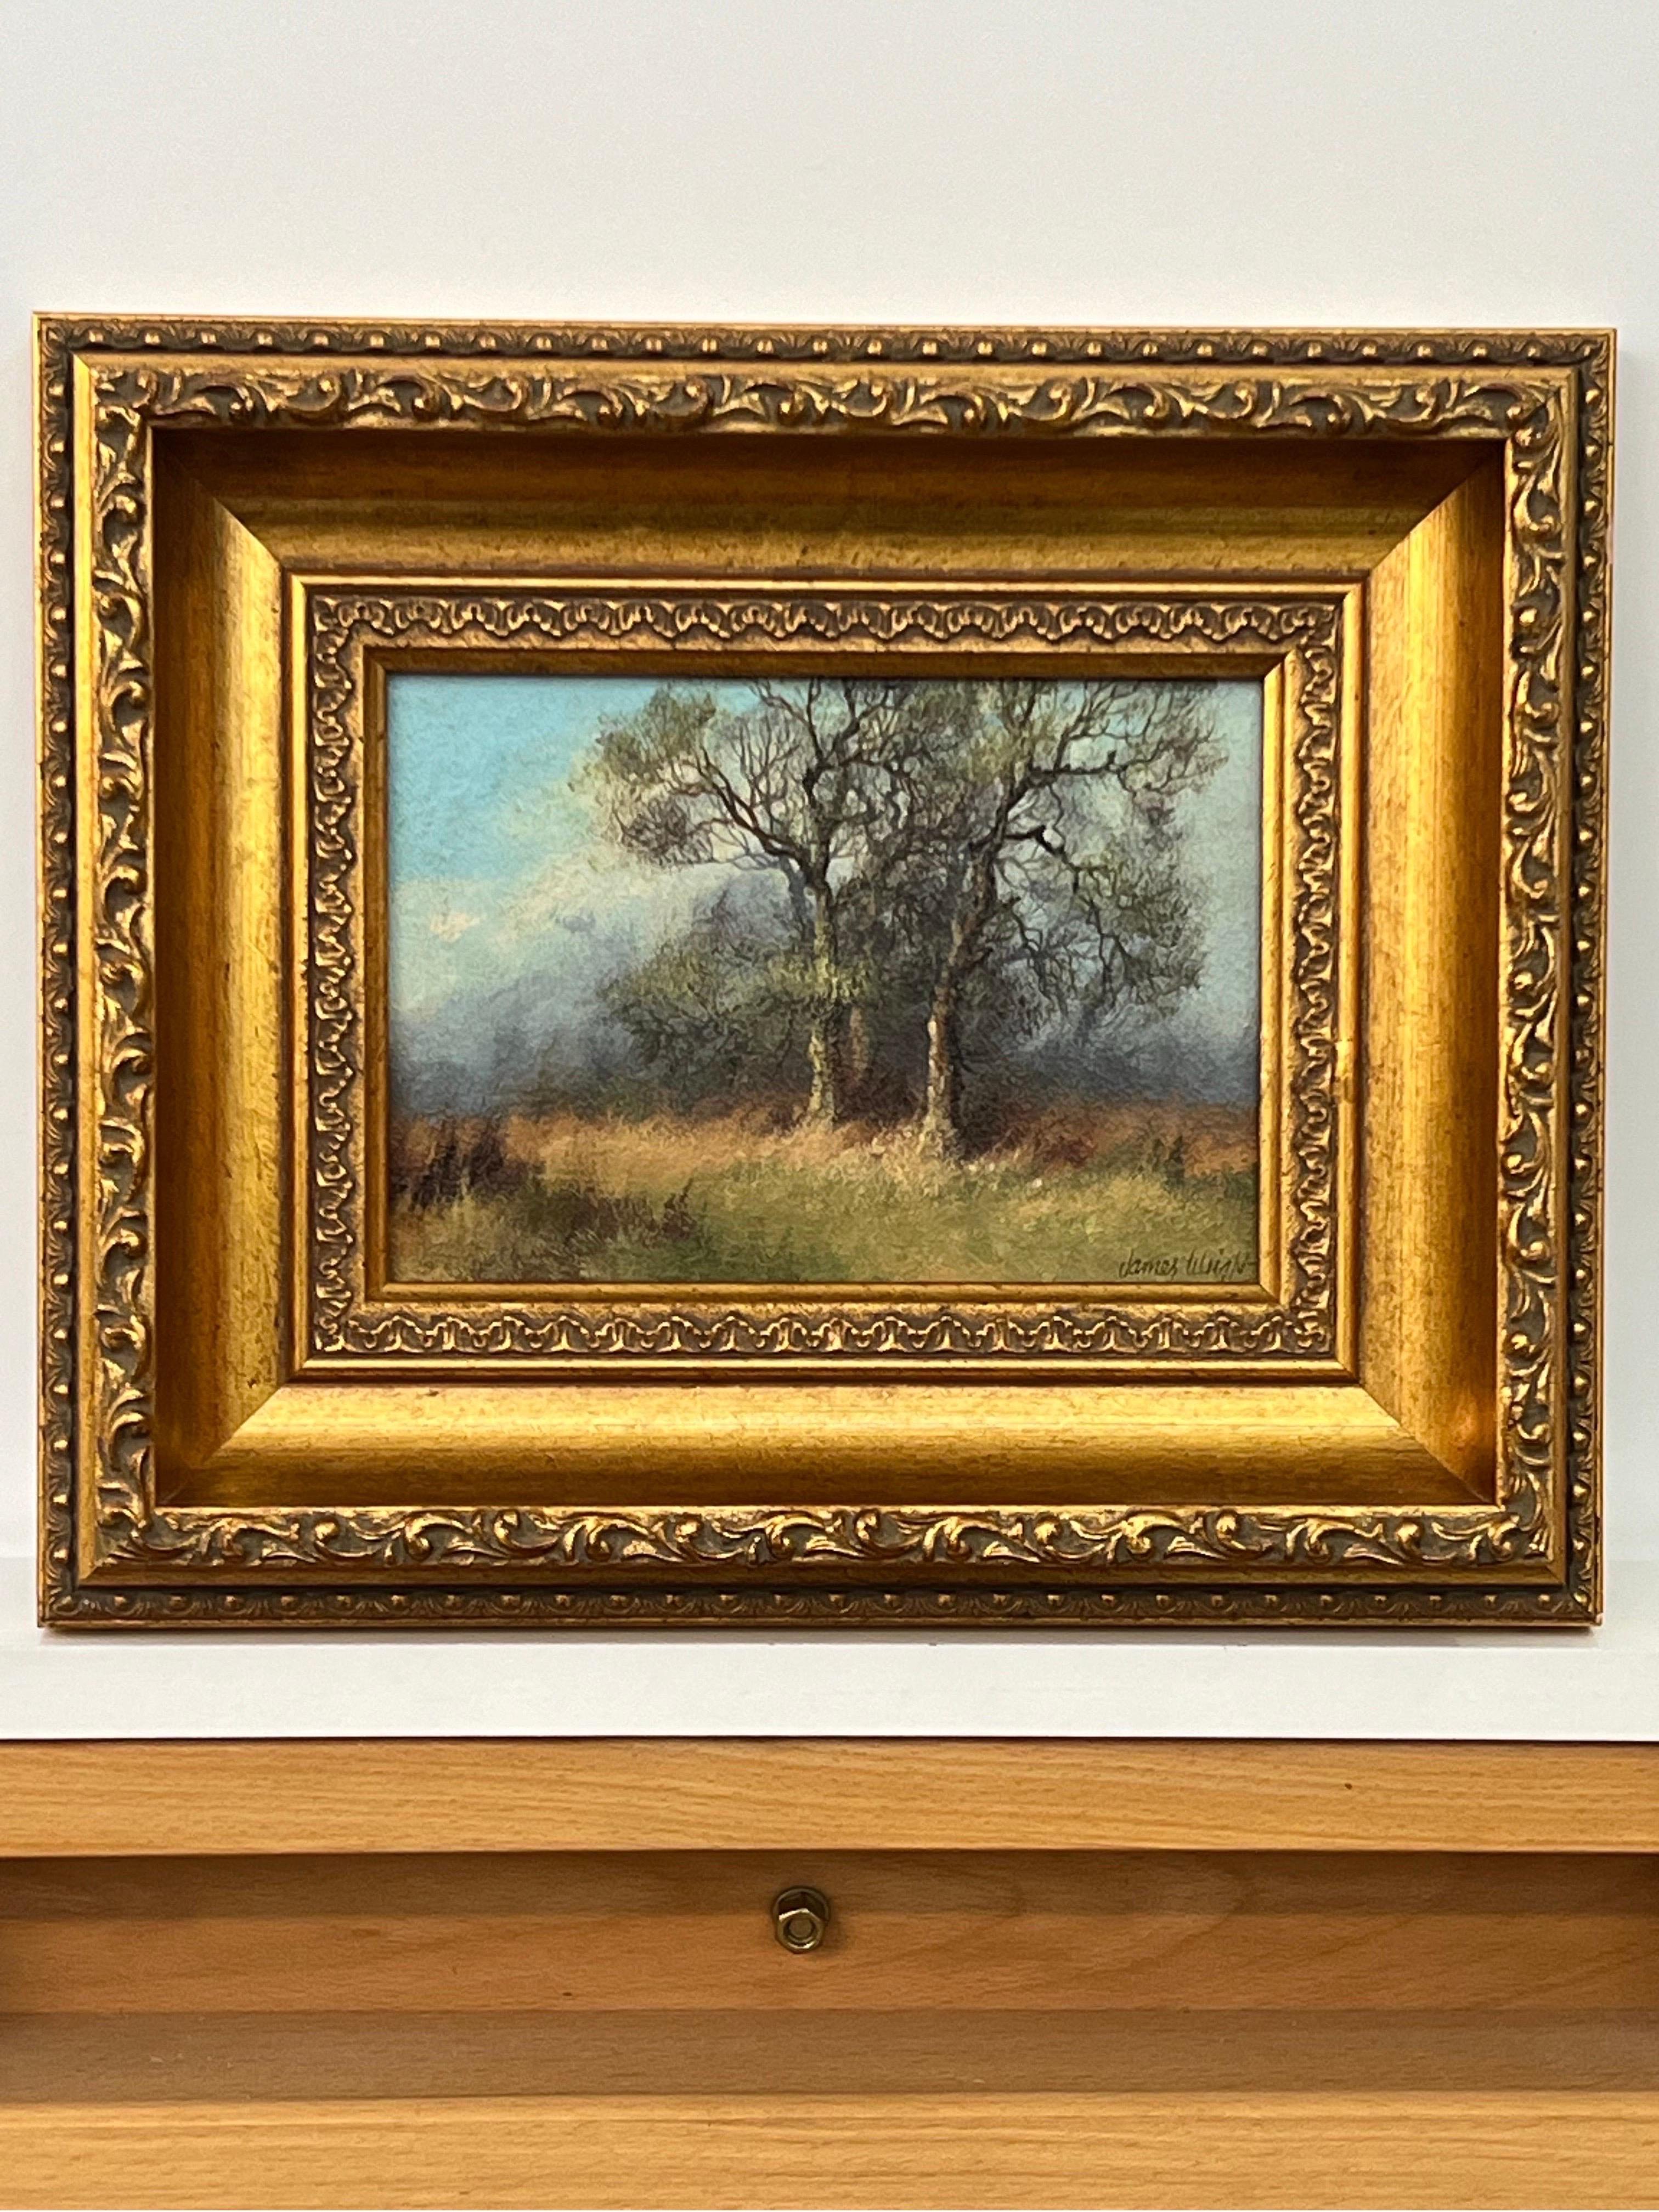 Étude des arbres et des champs dans la campagne anglaise par un artiste paysagiste du 20e siècle - Romantique Painting par James Wright